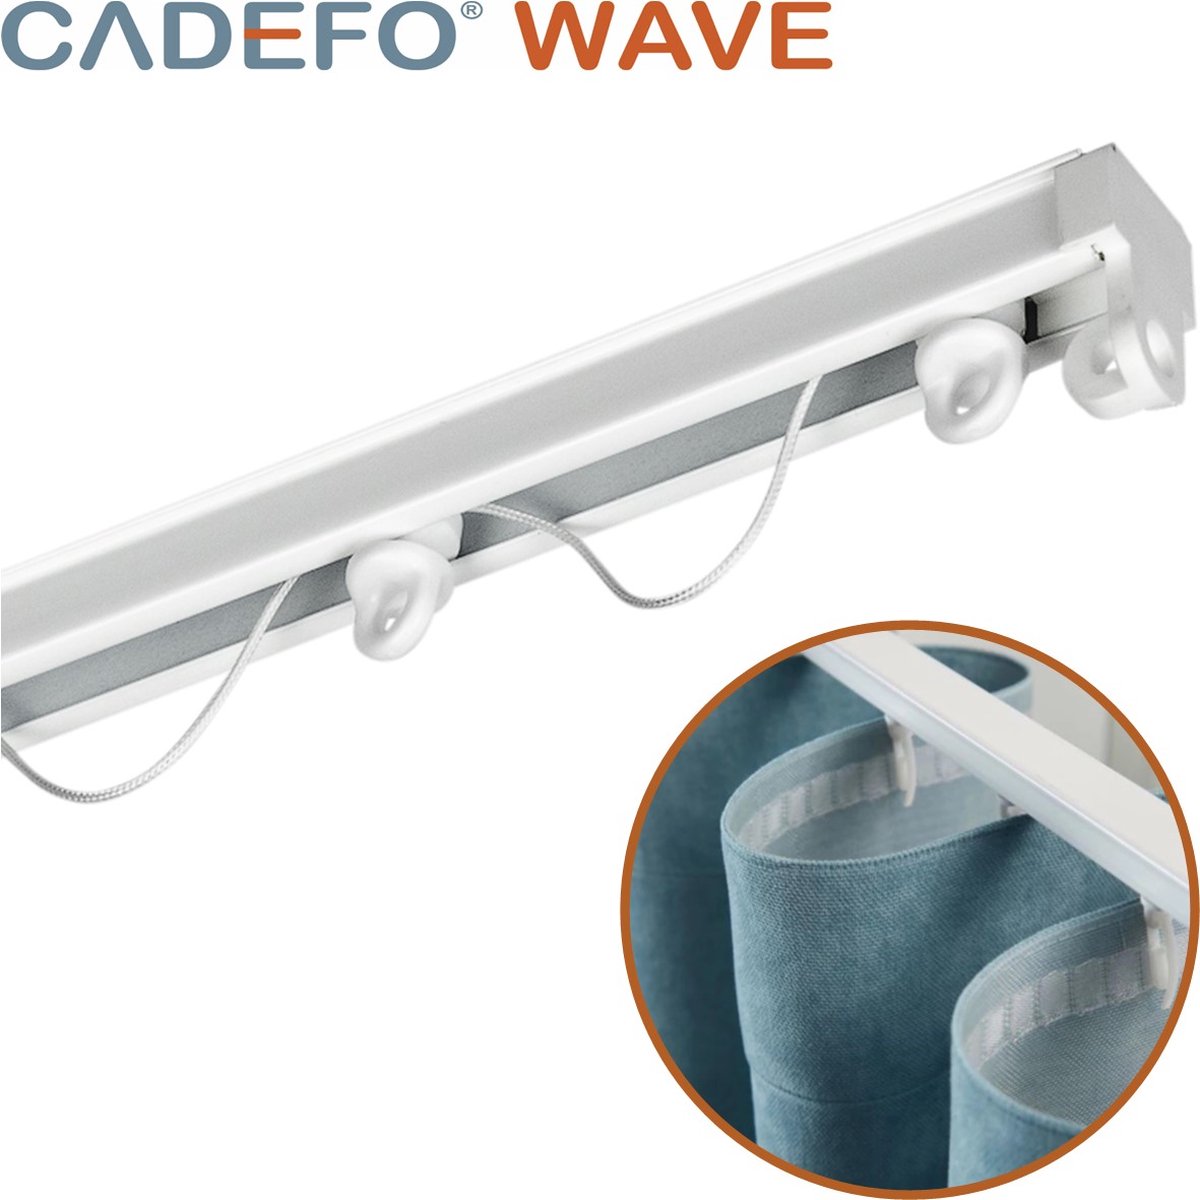 CADEFO WAVE (551 - 600 cm) Gordijnrails - Compleet op maat! - UIT 1 STUK - Leverbaar tot 6 meter - Plafondbevestiging - Lengte 565 cm